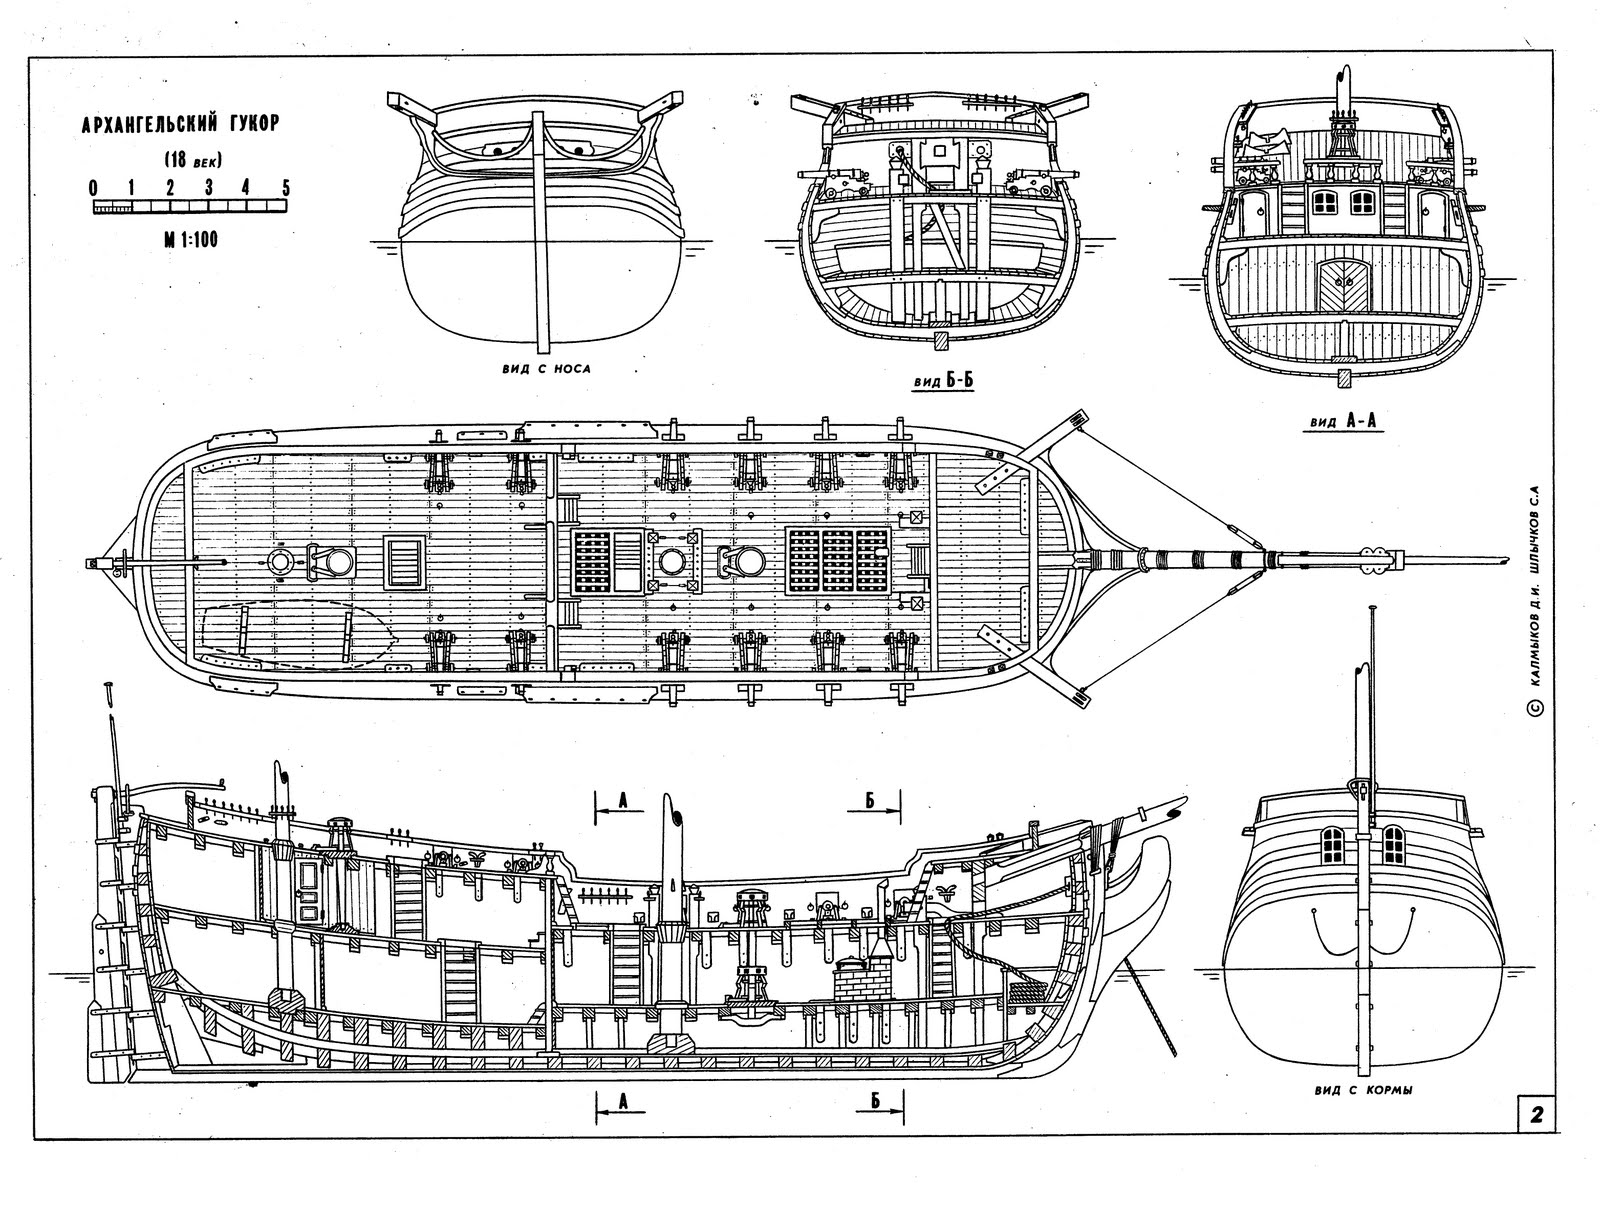 Model Ship Plans - free download: ~Gukor Modelship